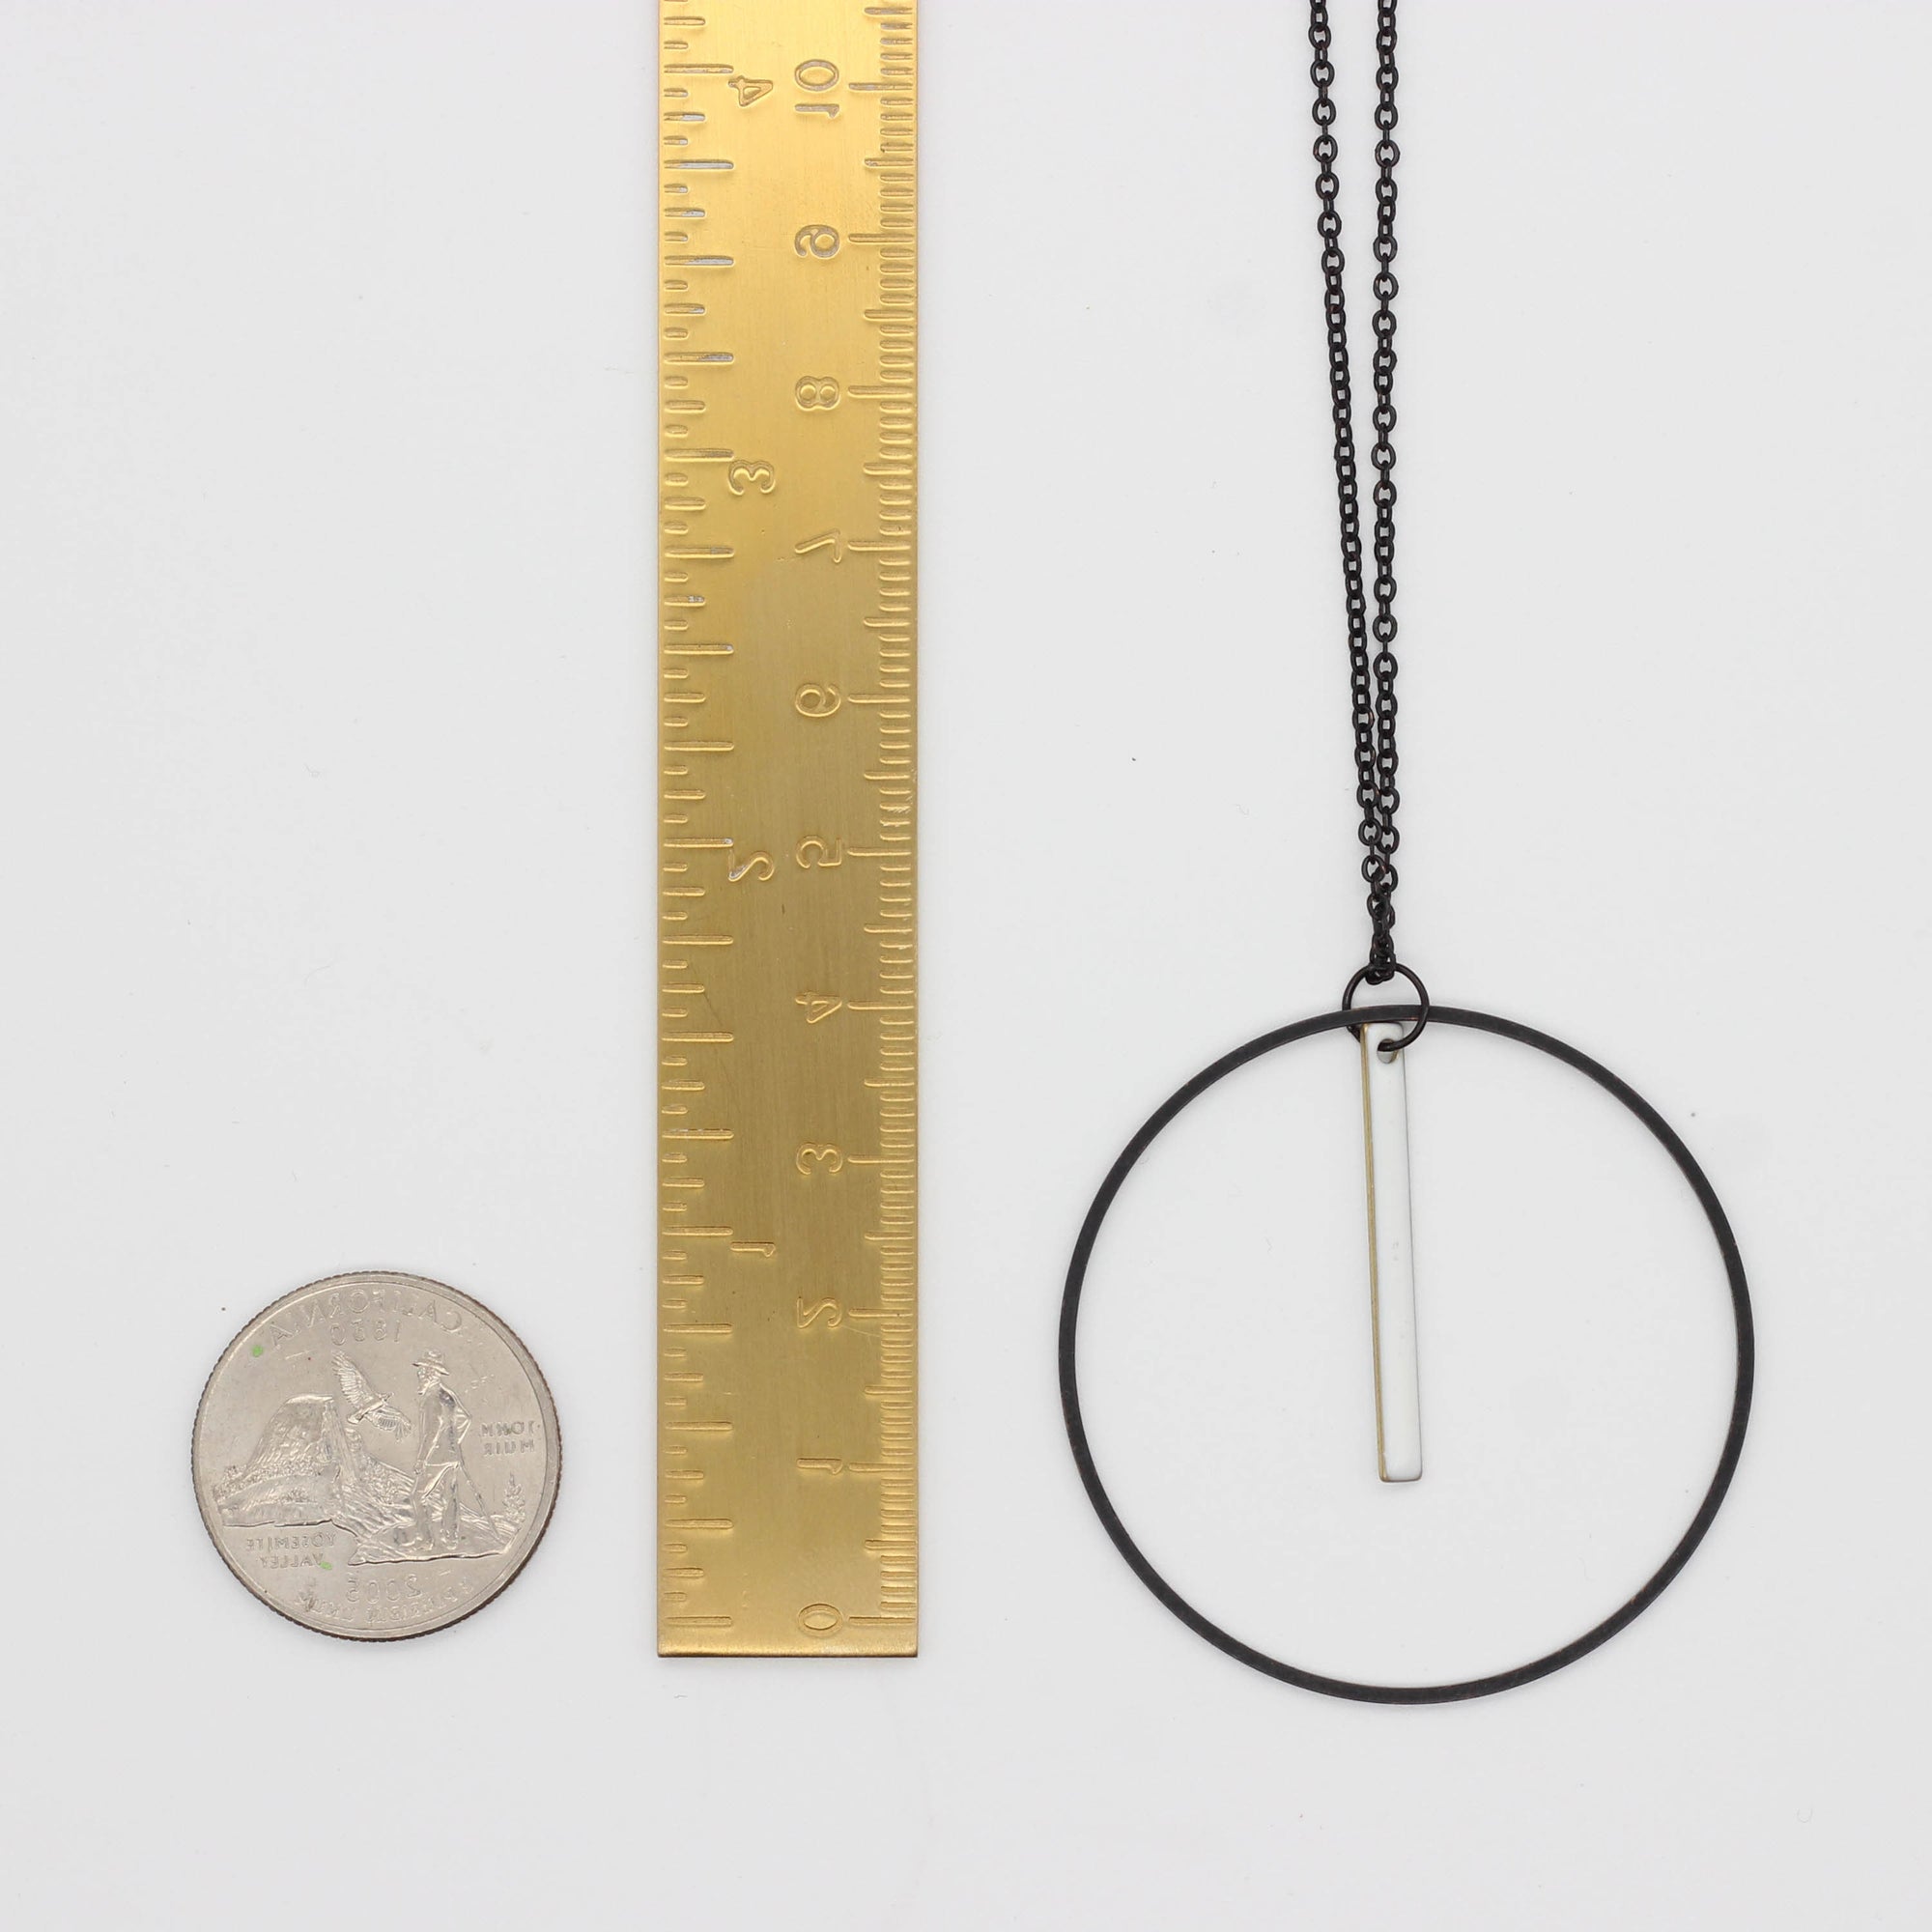 "La Luciole" Black Chain Pendant Necklace